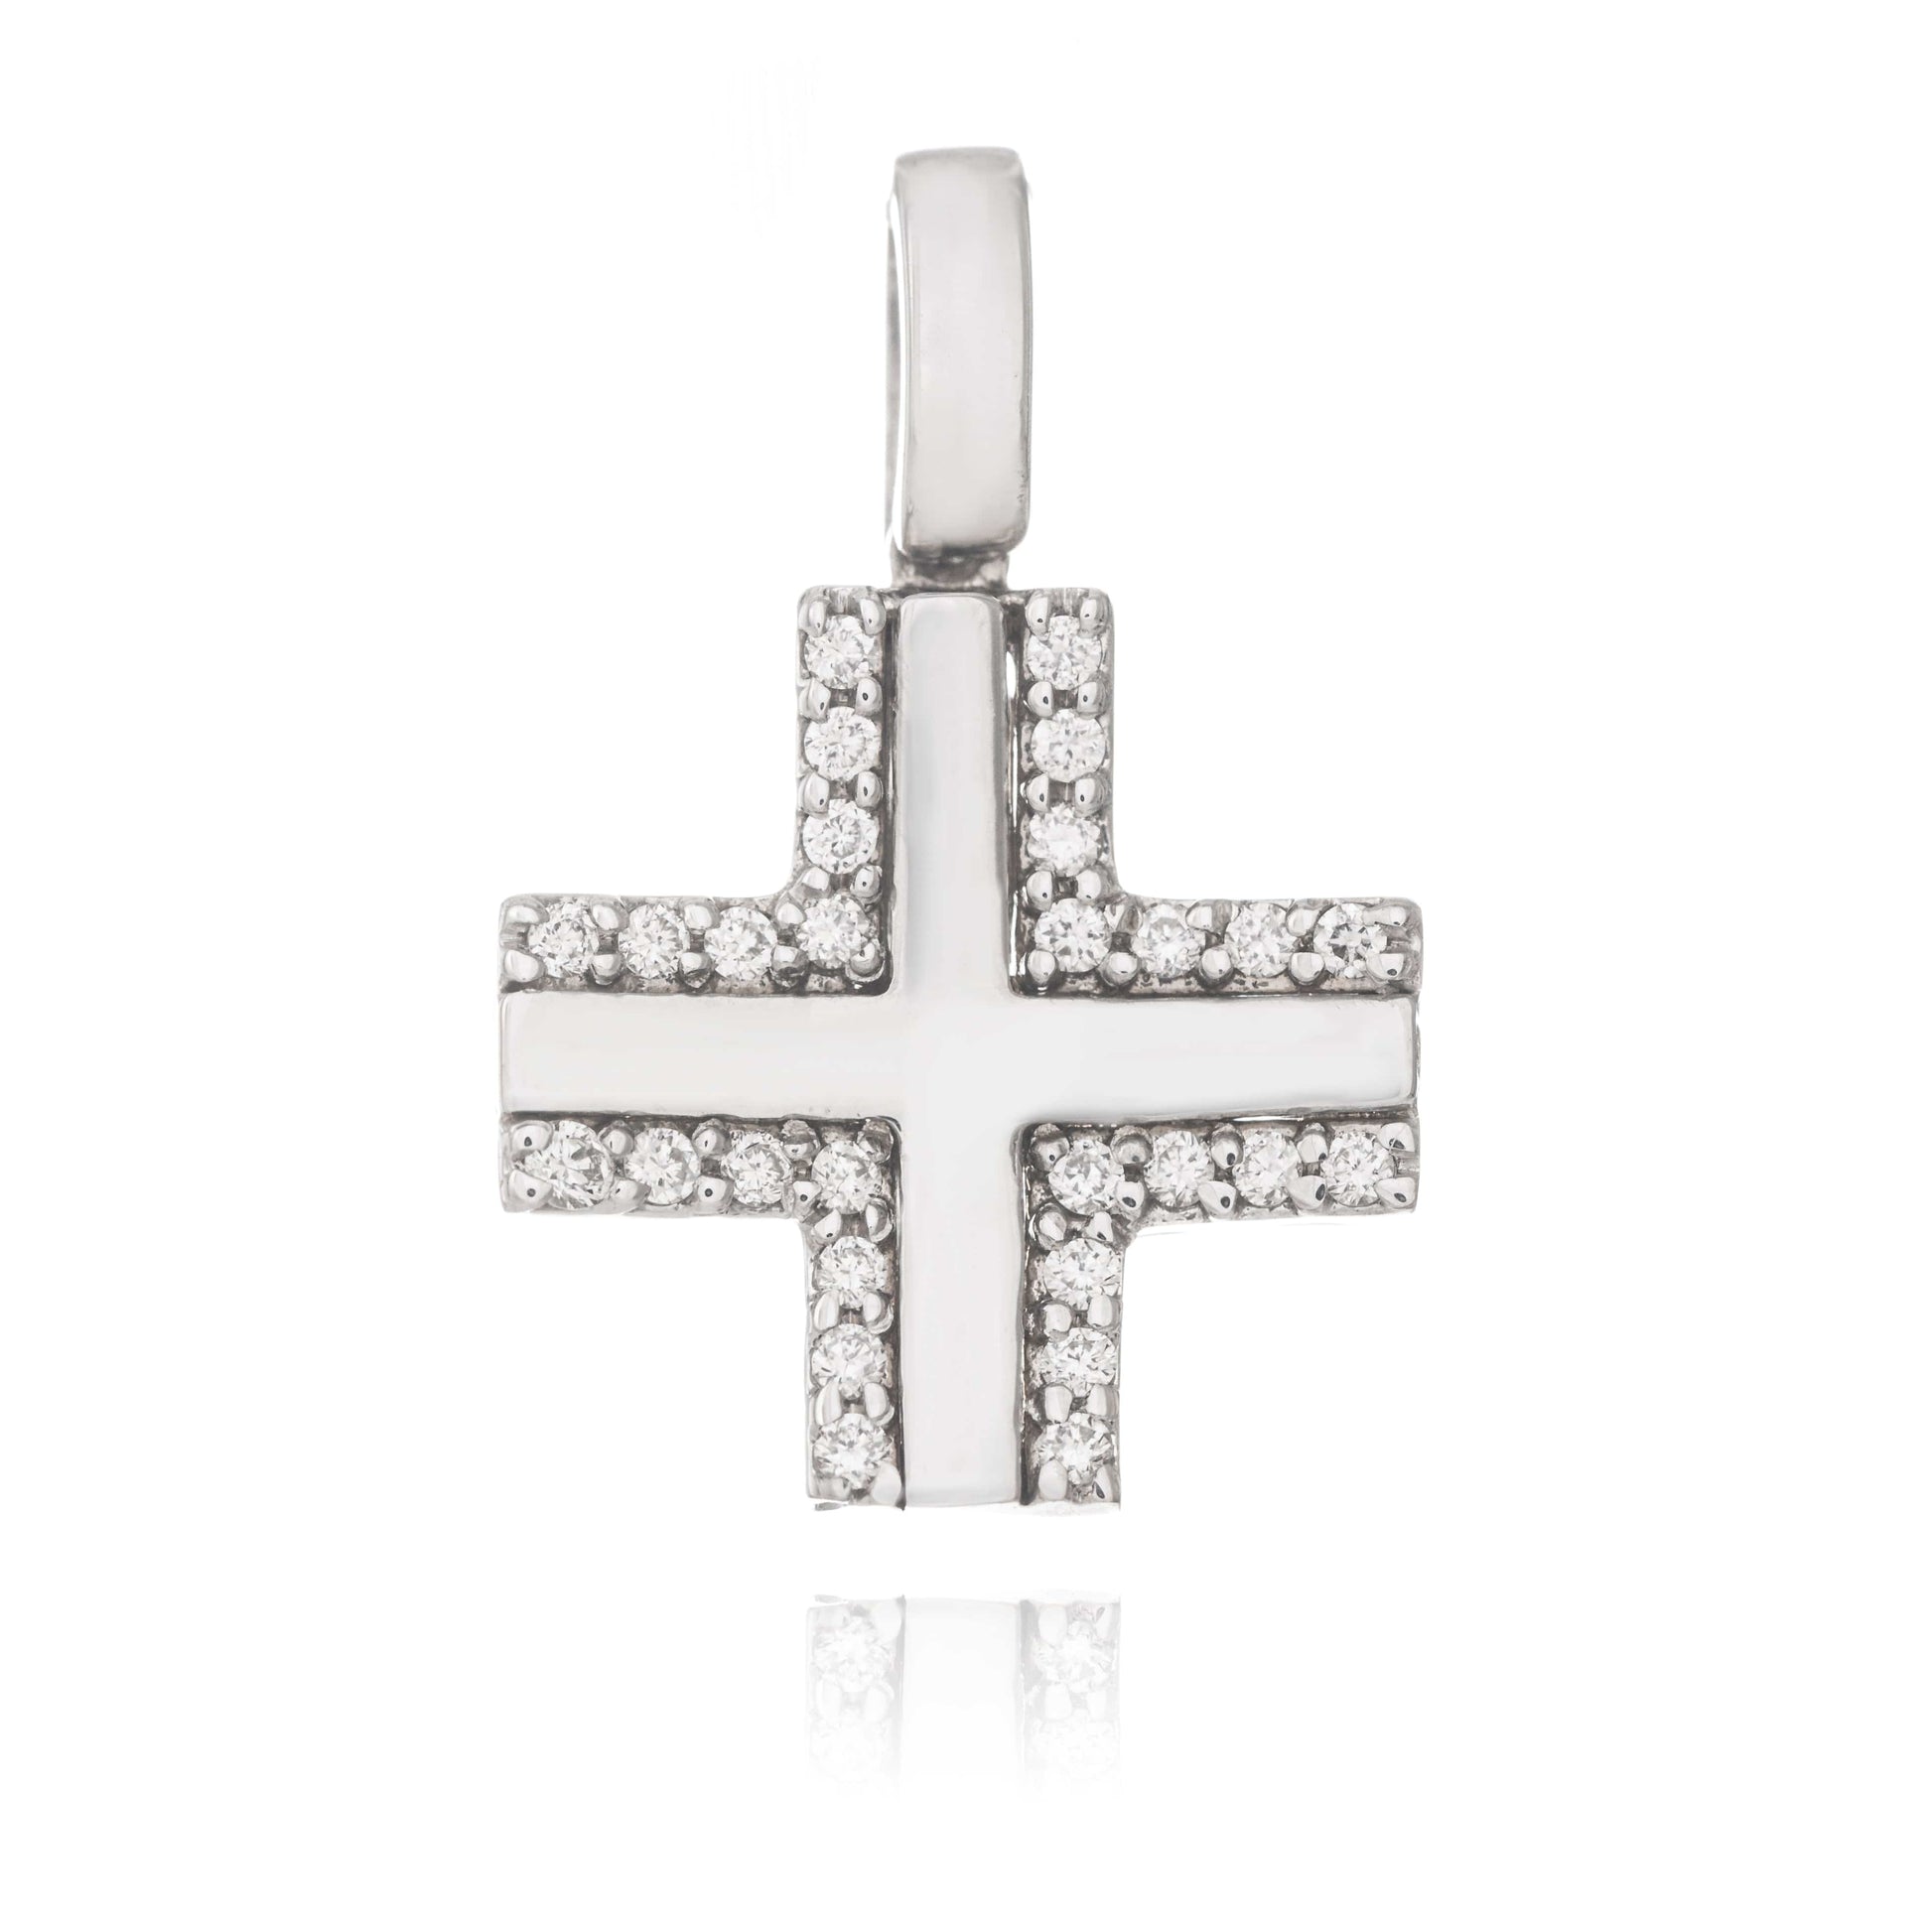 MONDO CATTOLICO Jewelry Cm 1.2 (0.47 in) / Cm 1.2 (0.47 in) Diamonds Cross in White Gold